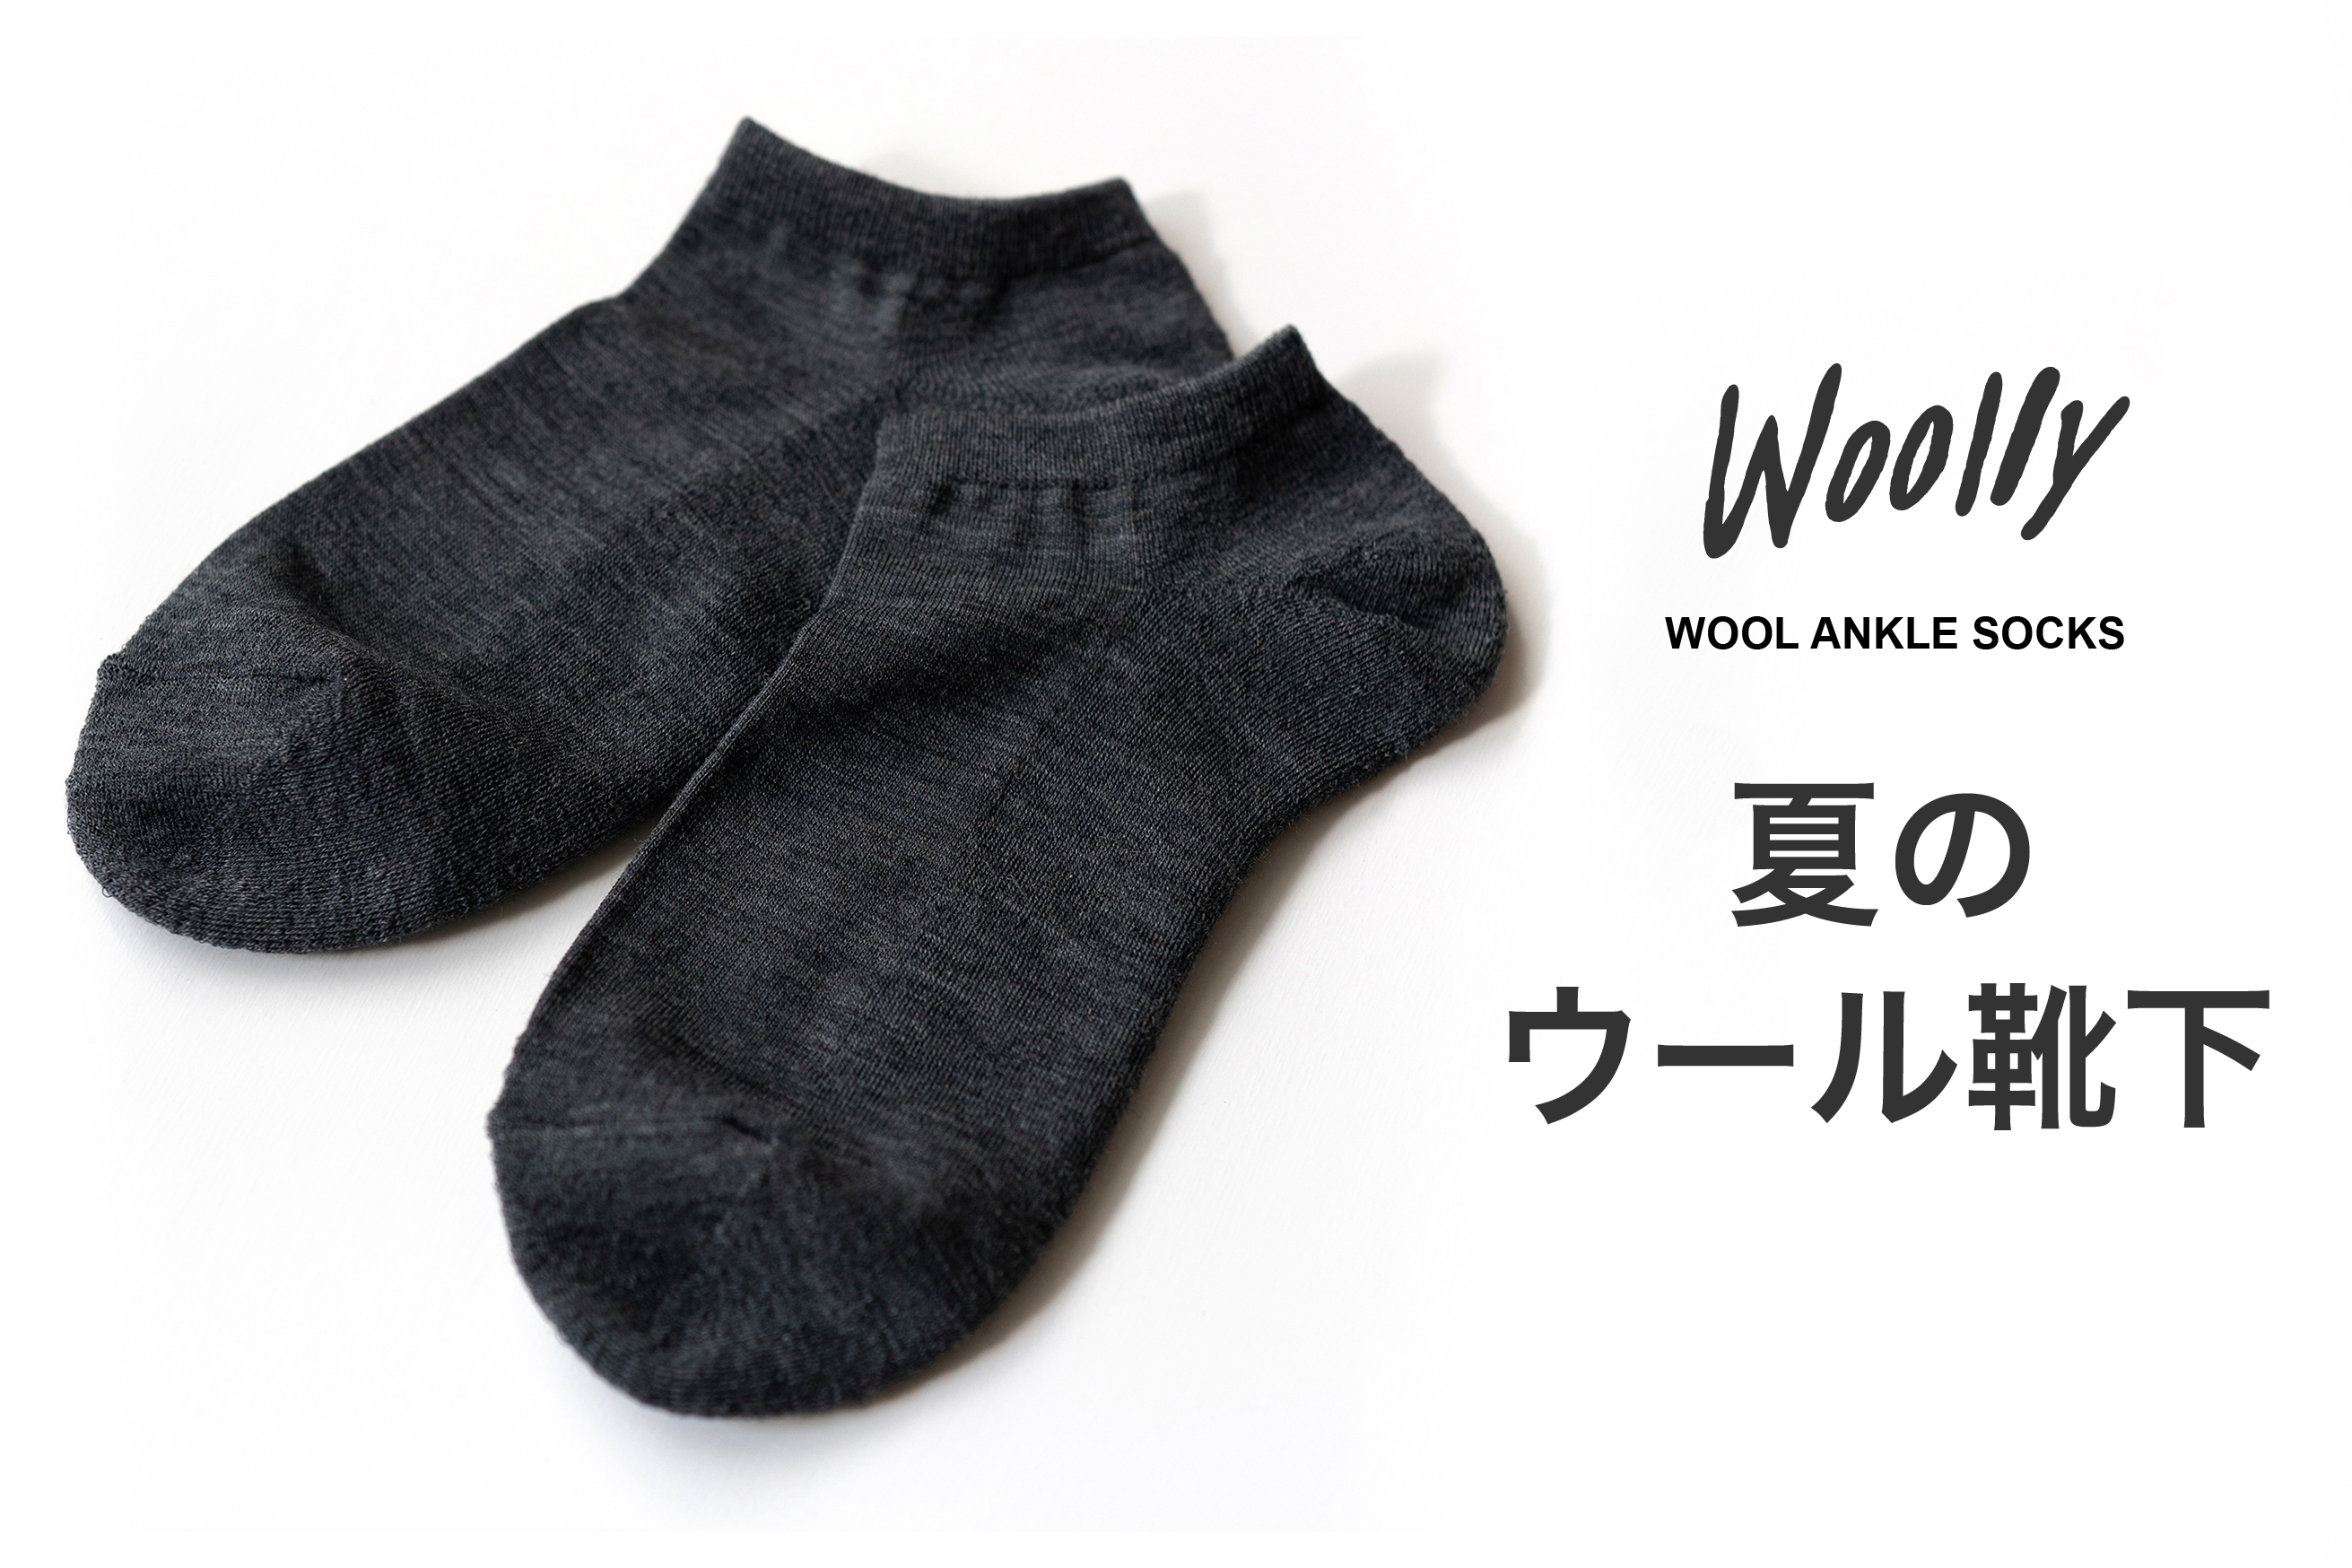 蒸れにくい夏のウールソックス。ウールの専門ブランド『Woolly/ウーリー』がアンクル丈のソックス を開発、予約販売を開始。｜株式会社ウーリーのプレスリリース